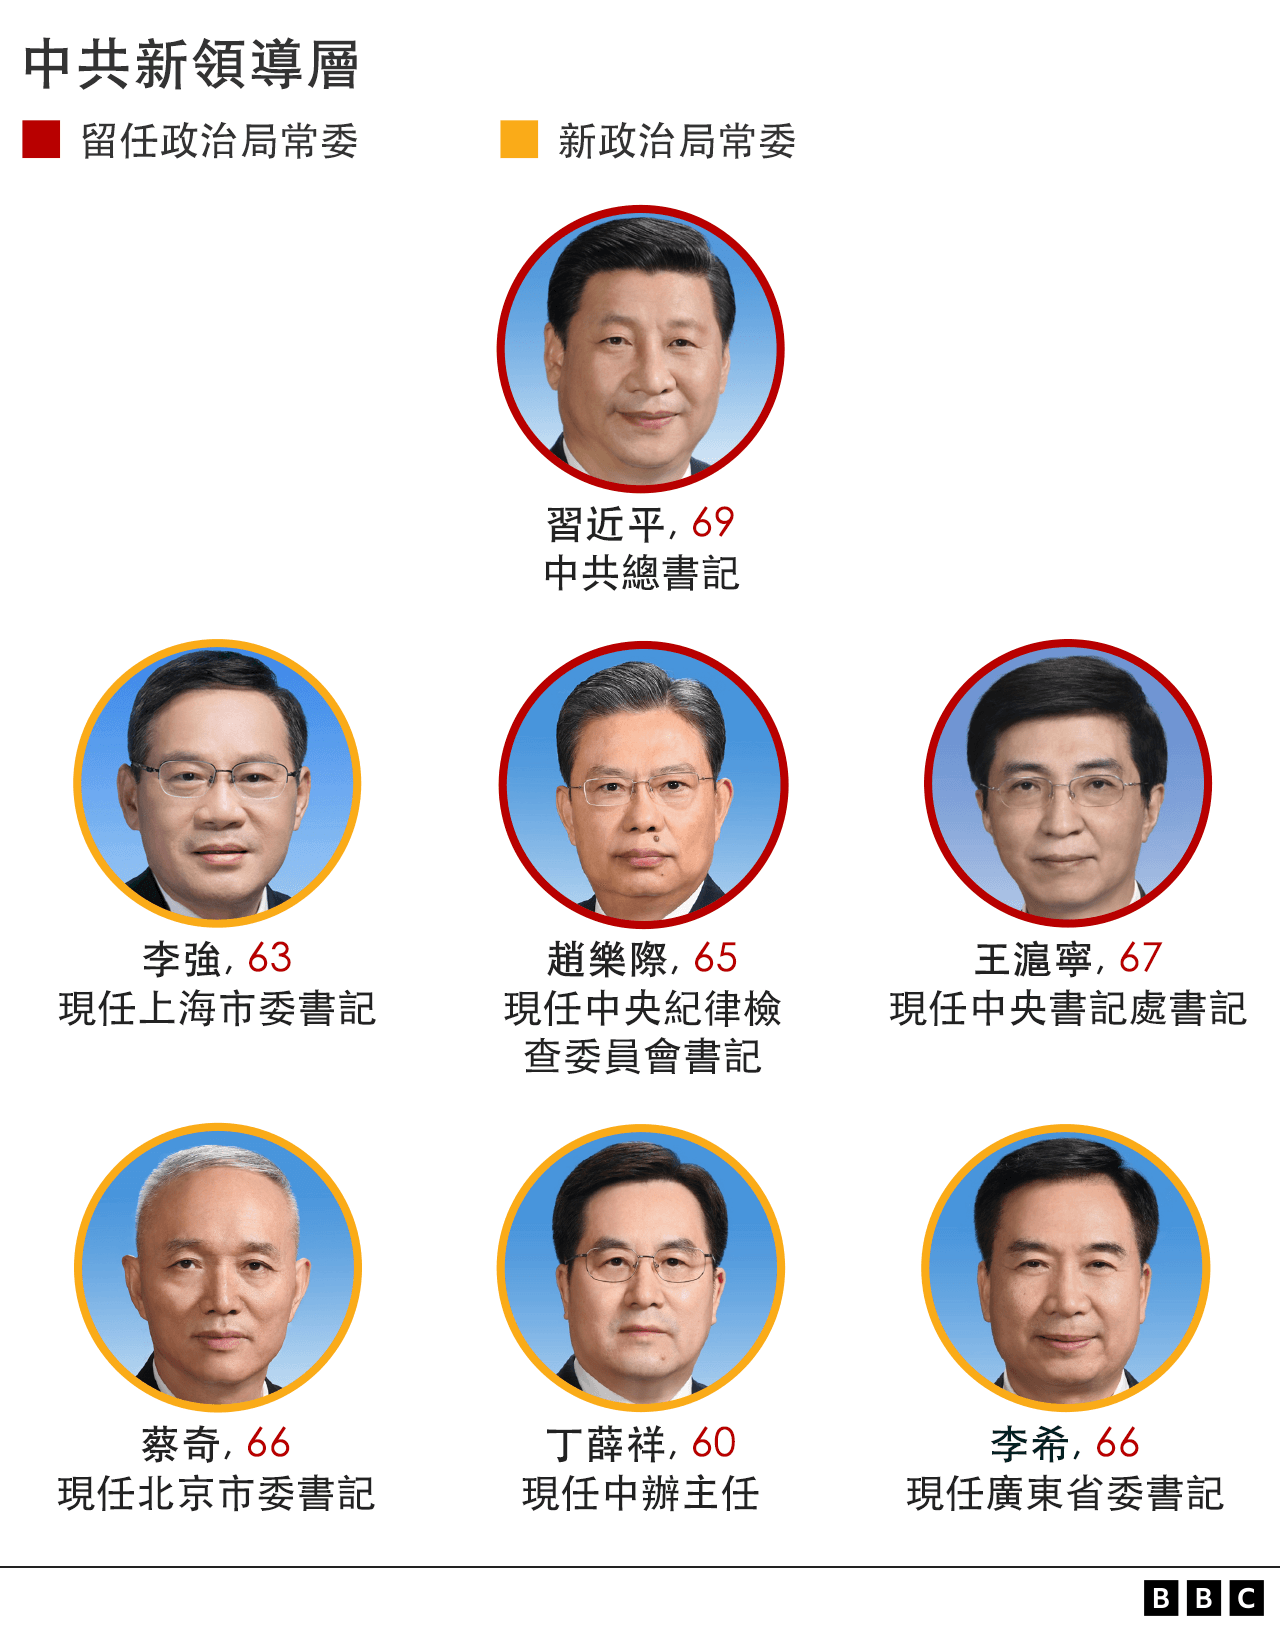 中国各级政府干部级别排名 领导职级排序划分表